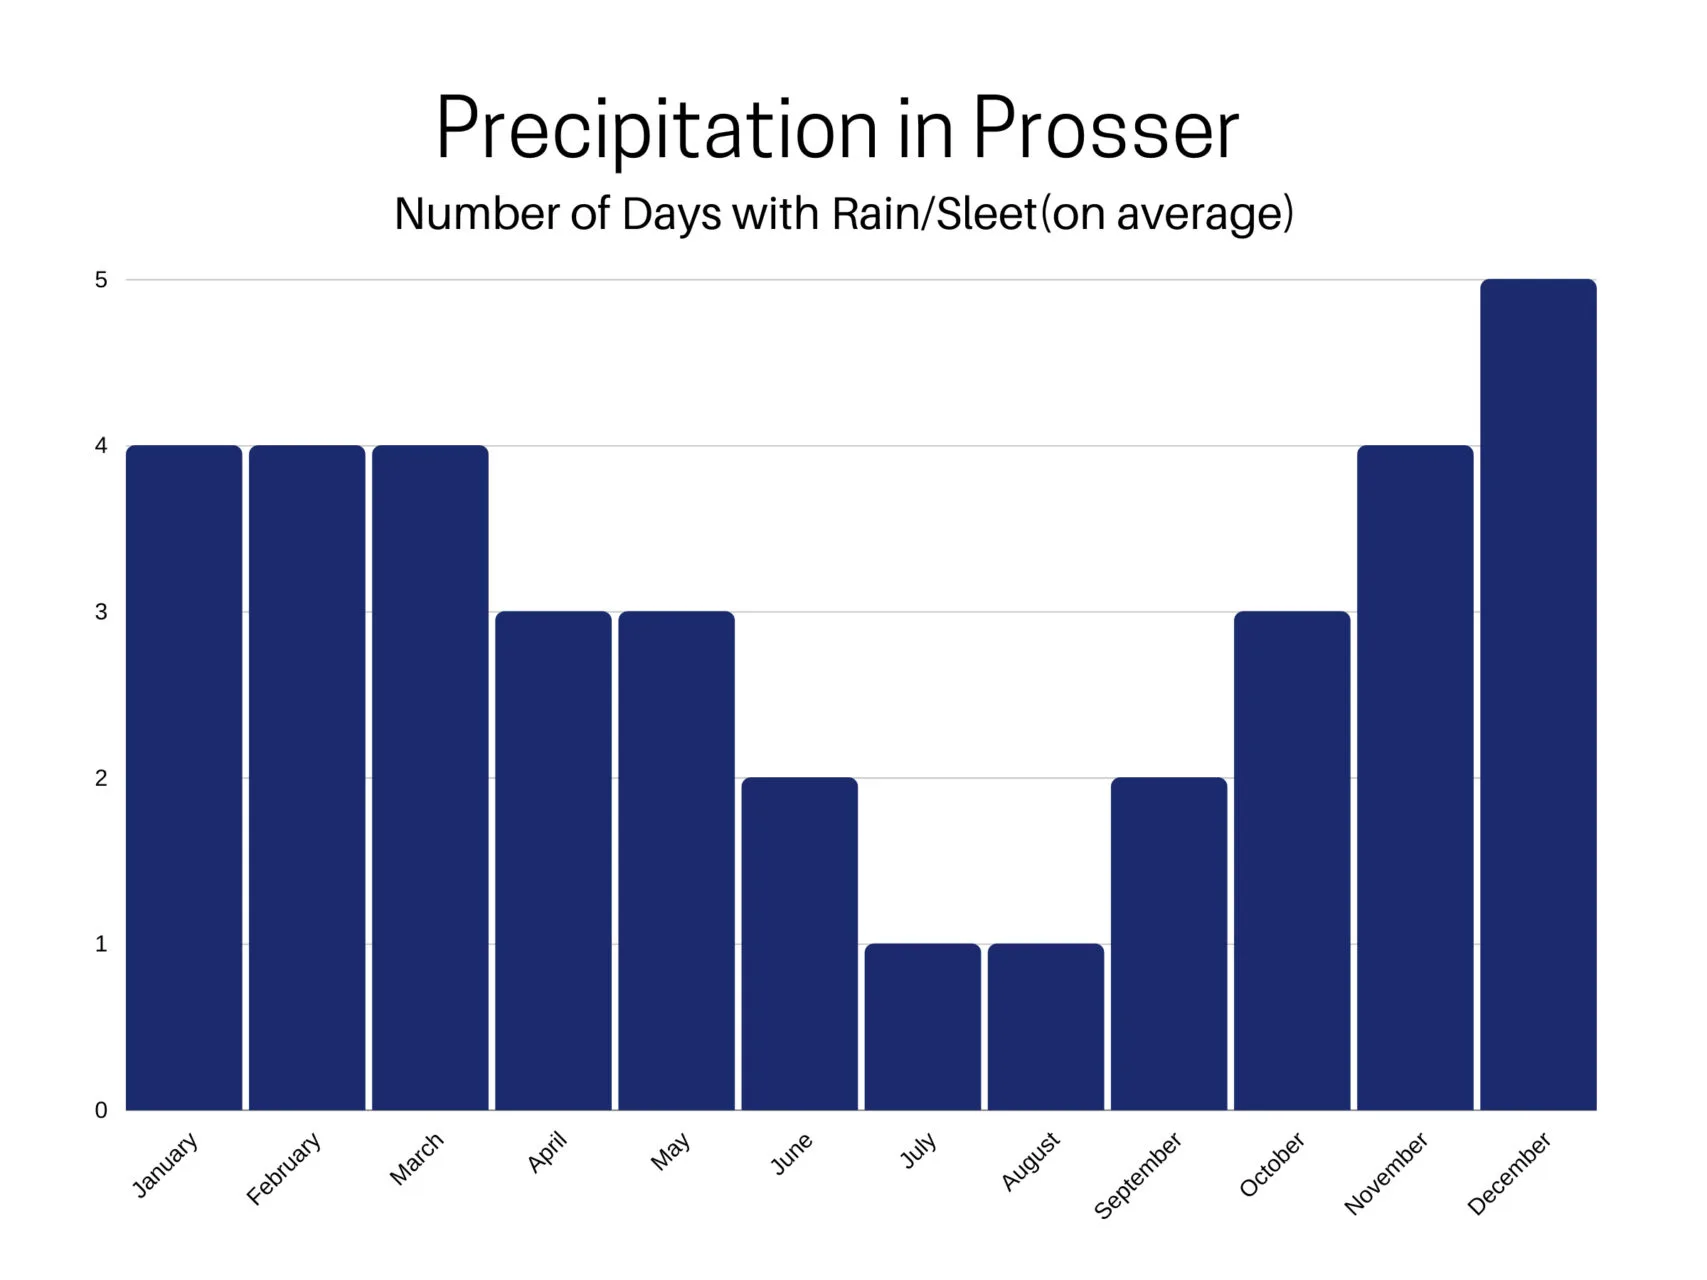 Average precipitation in Prosser, WA.